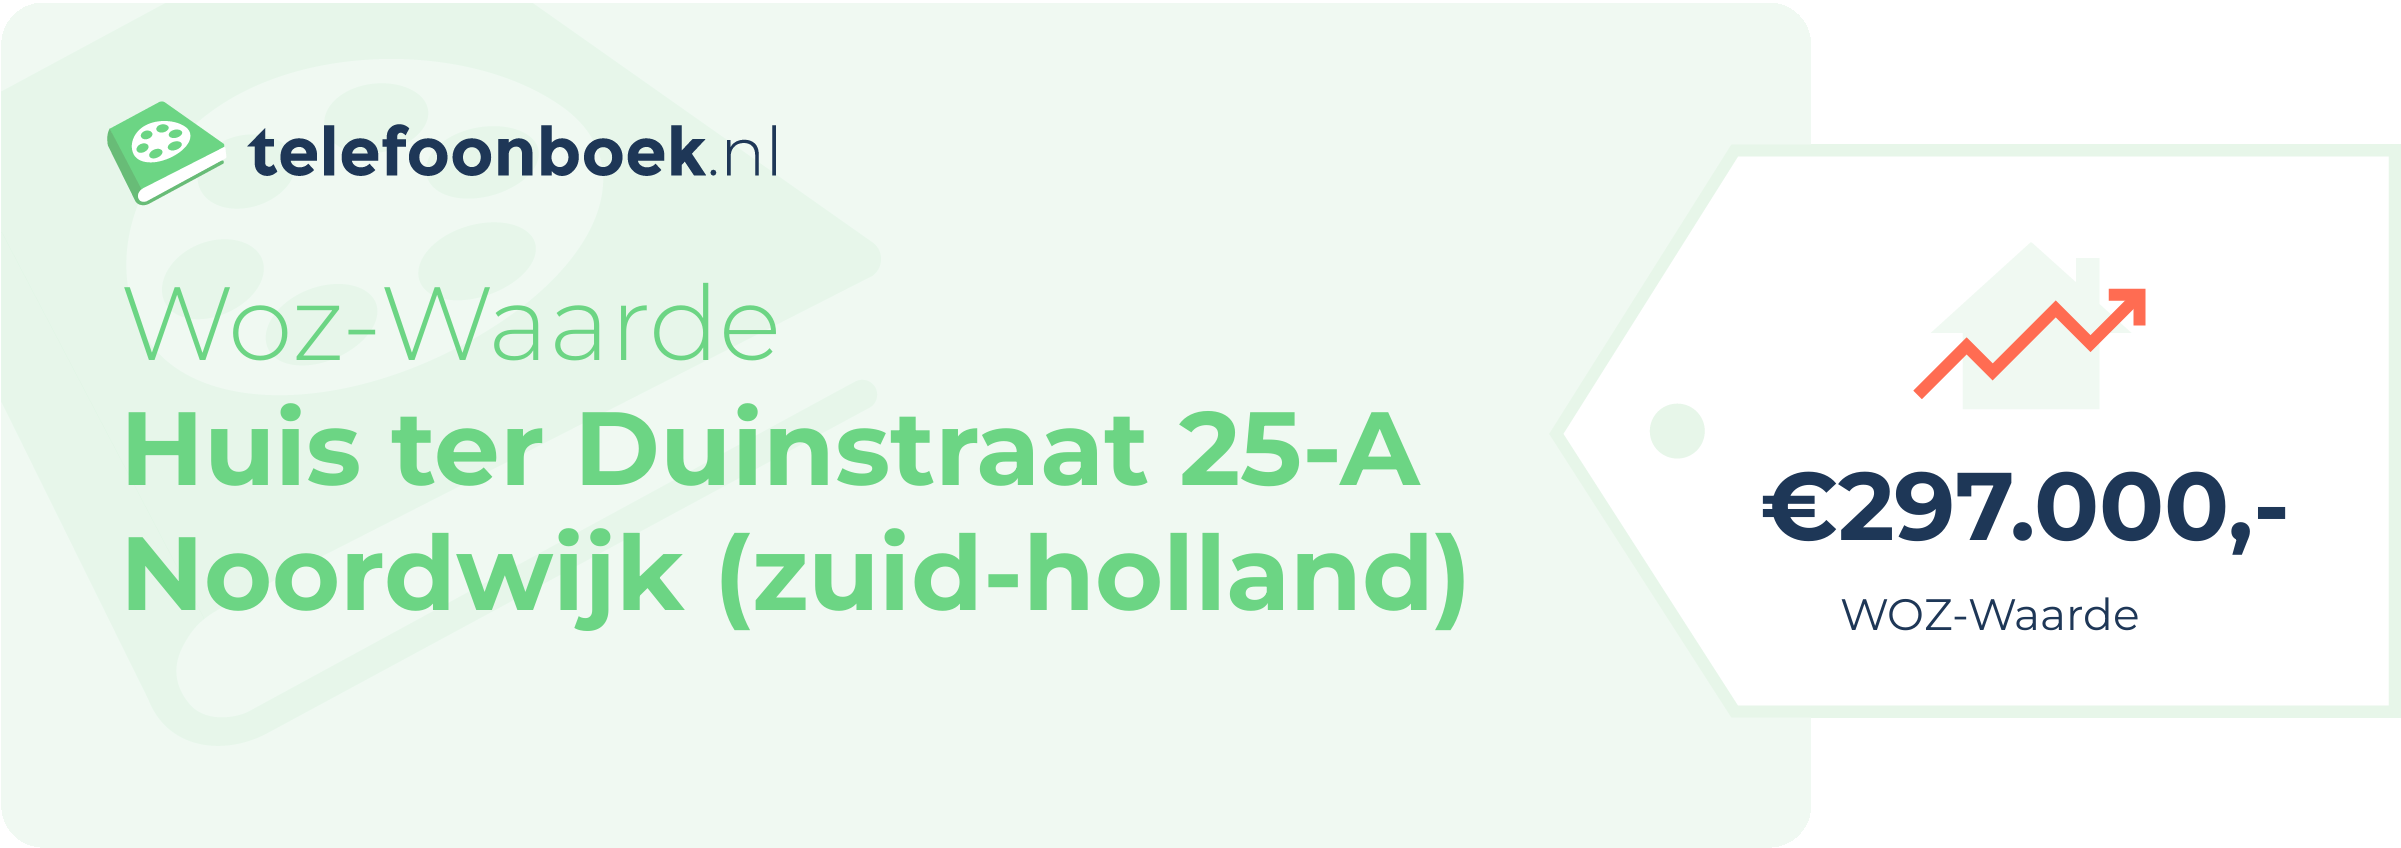 WOZ-waarde Huis Ter Duinstraat 25-A Noordwijk (Zuid-Holland)